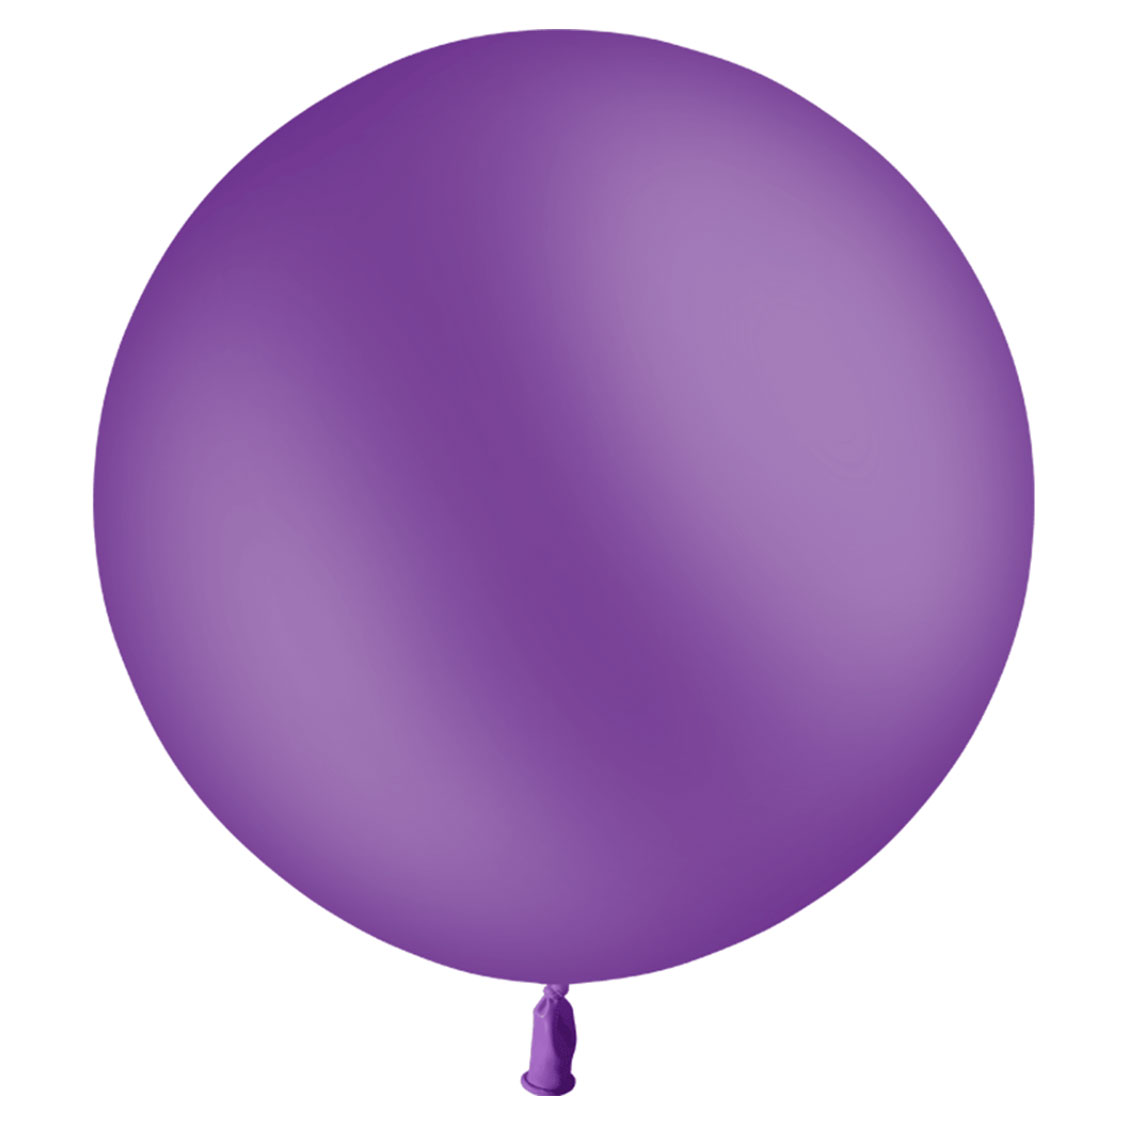 Ballon violet